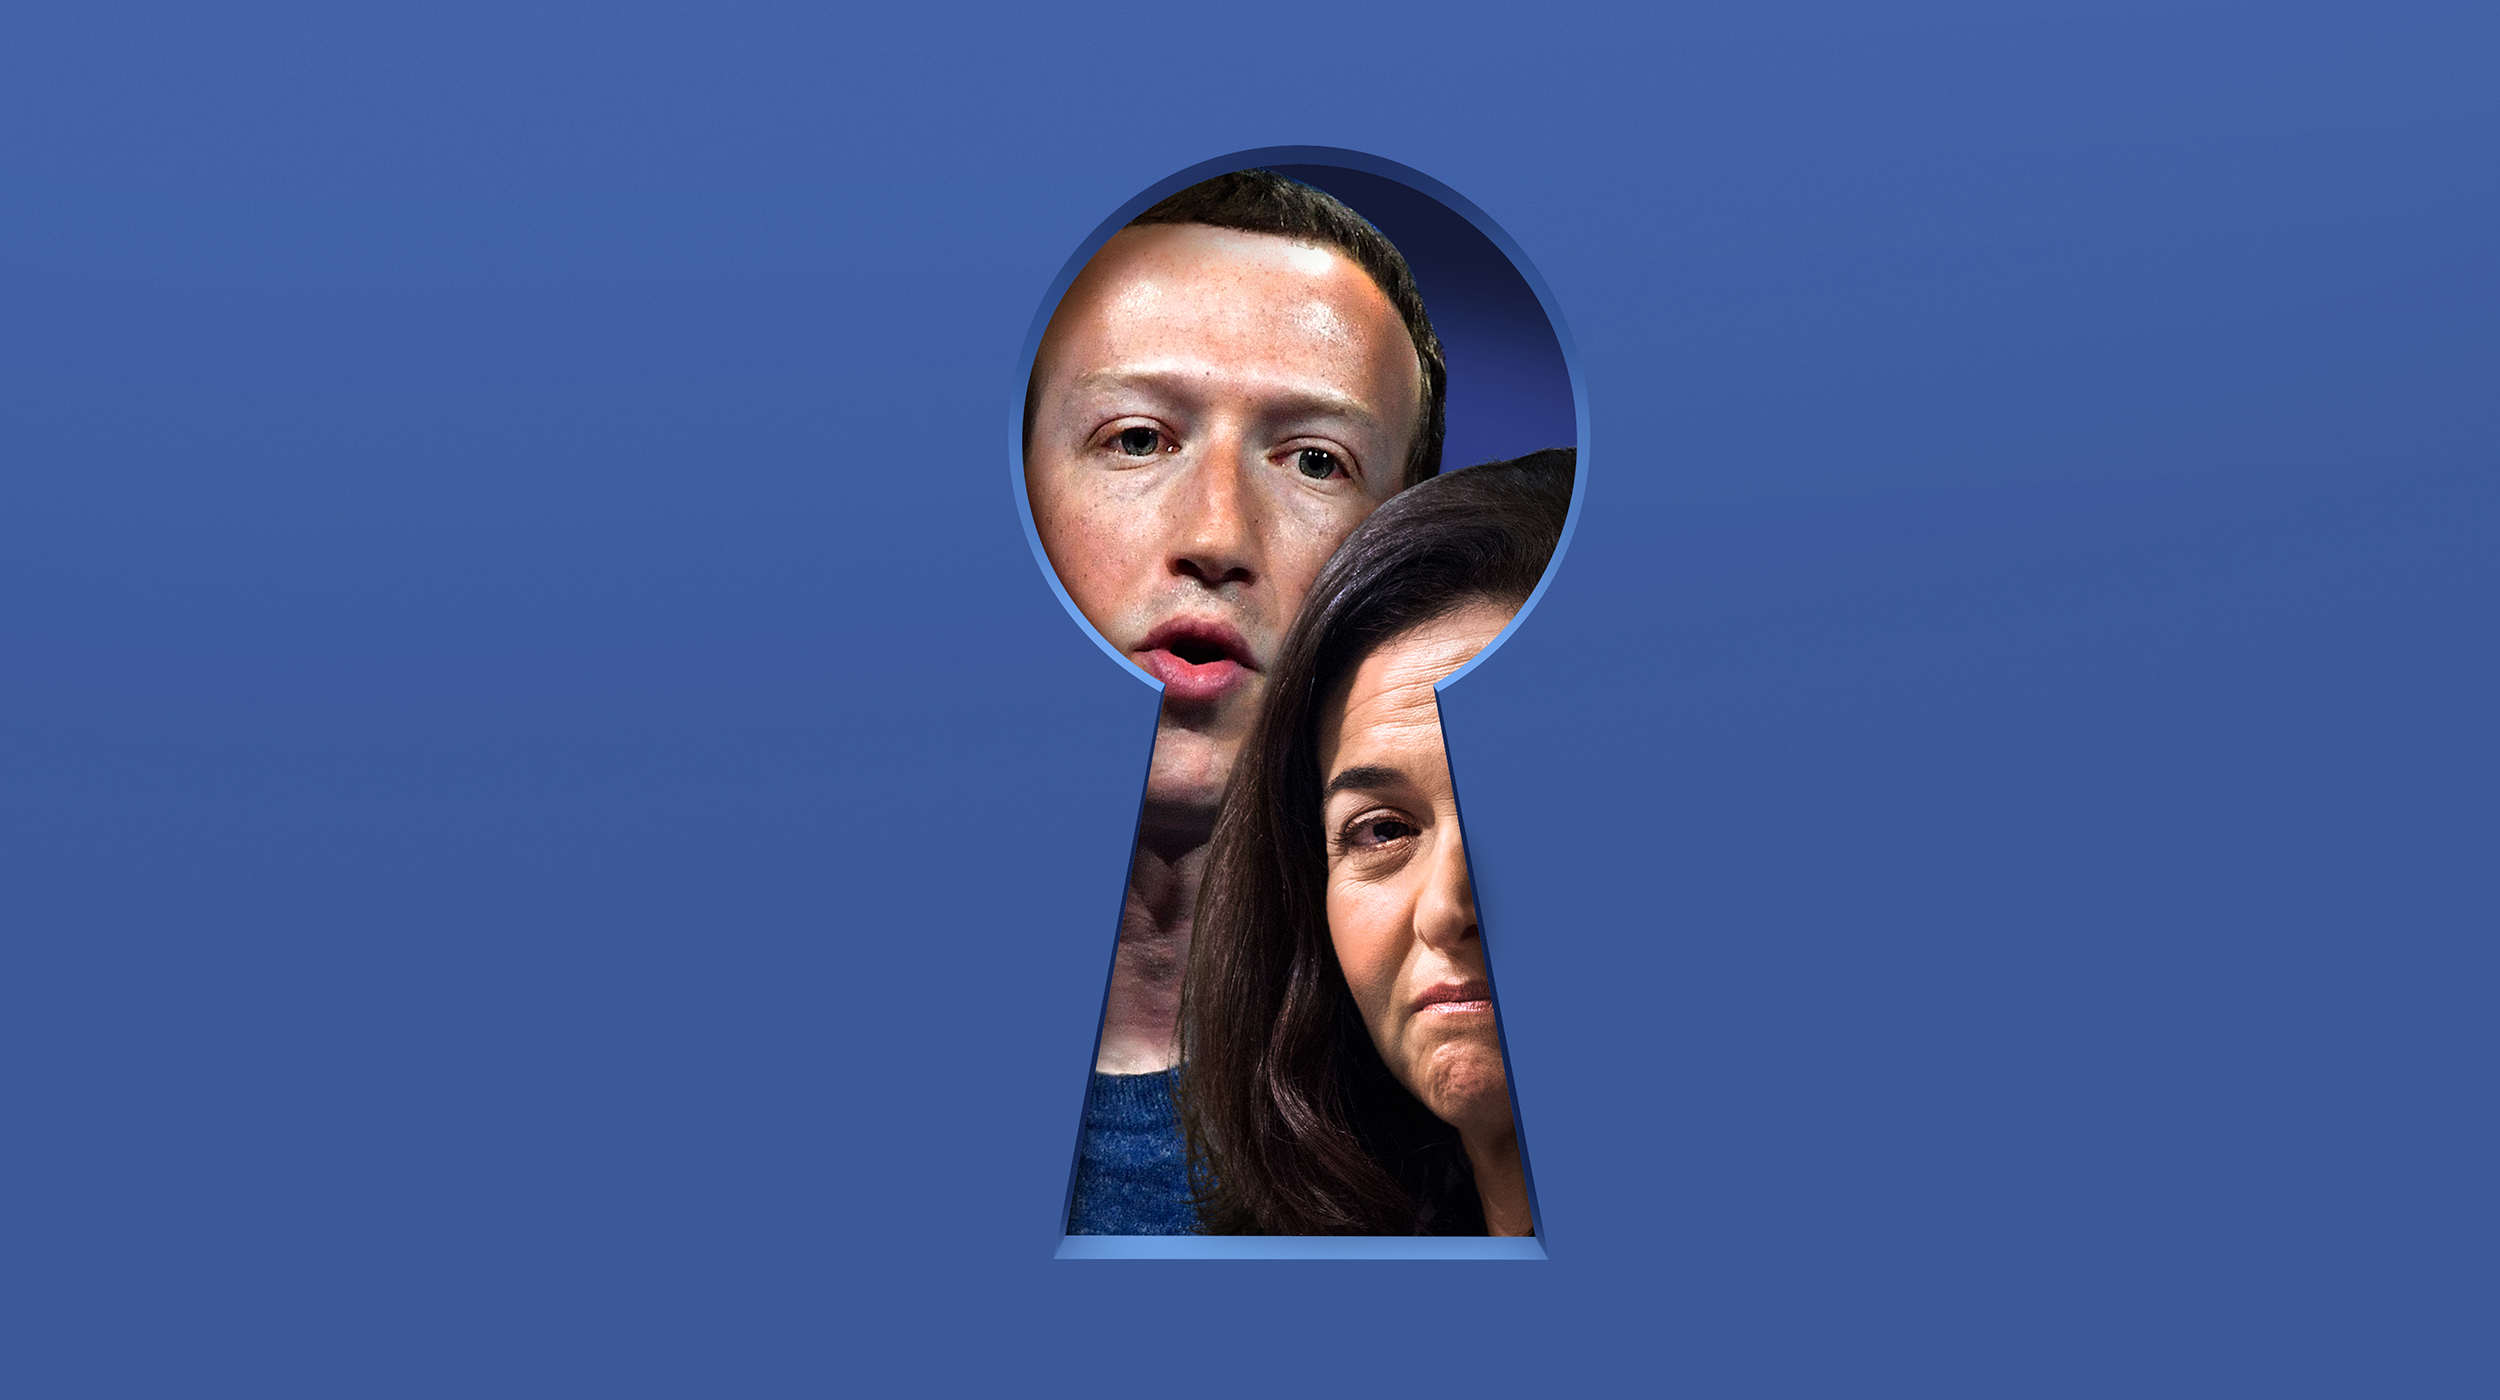 ป้องกันไม่ให้เฟซบุ๊กแอบเก็บข้อมูลได้ง่าย ๆ ด้วย Off-Facebook Activity